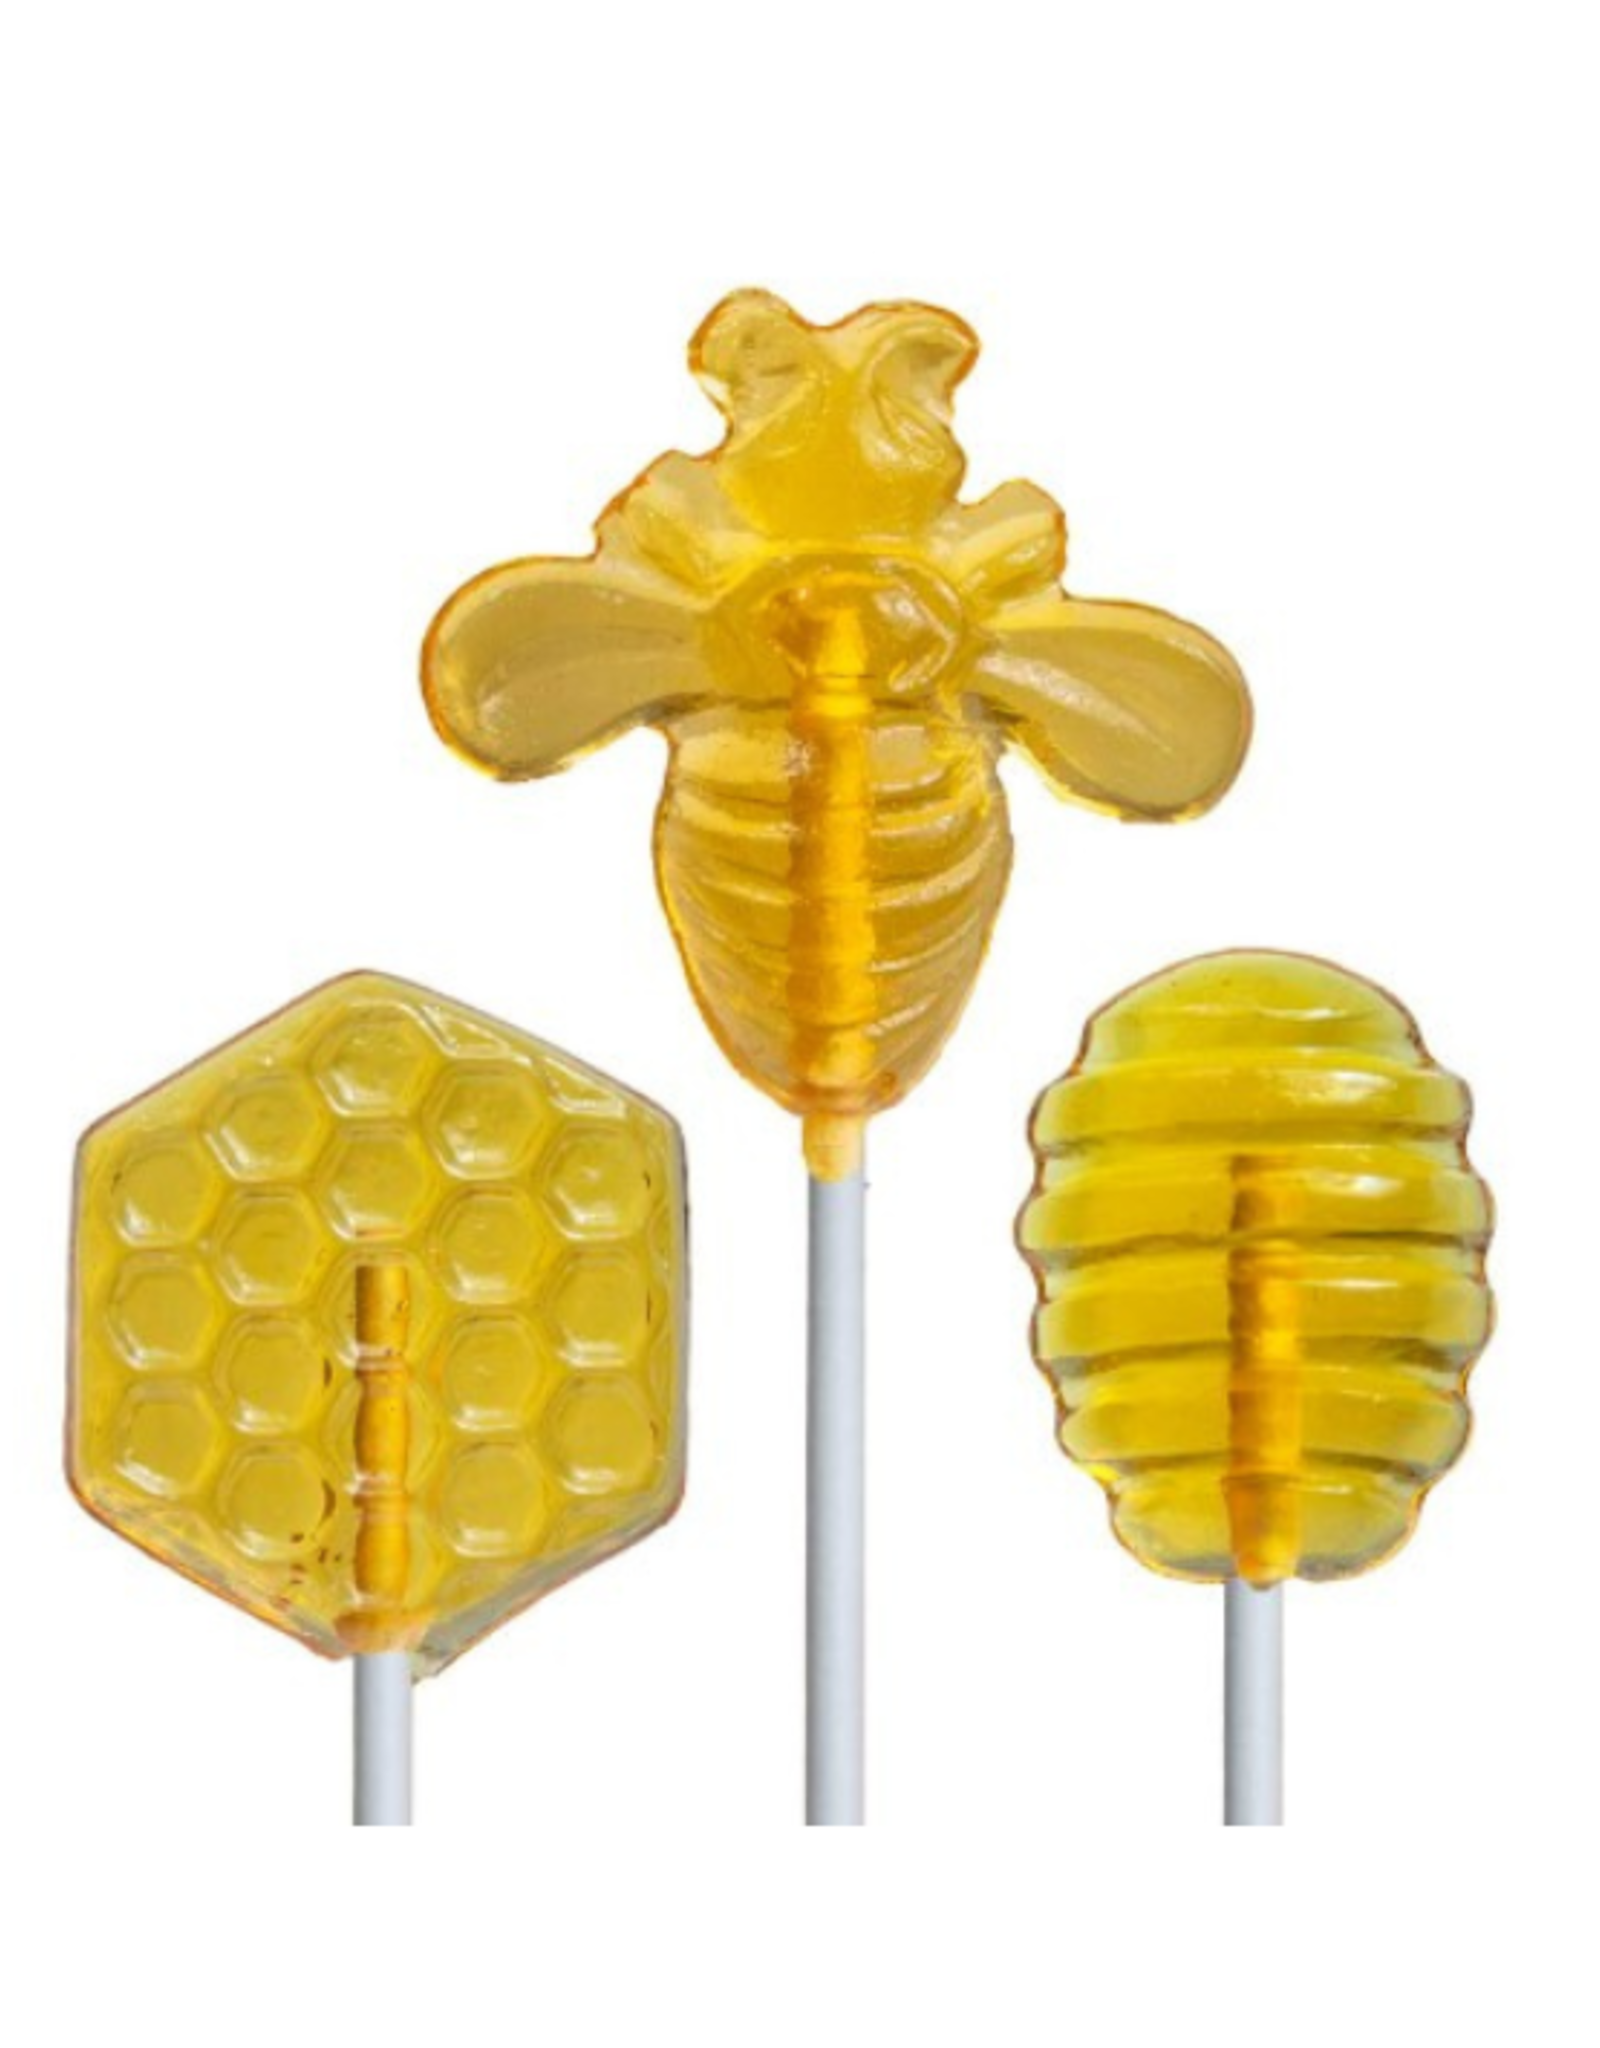 Jimmy Zee's Jimmy Zee's - Lollipop - Honey Dipper Lollipop